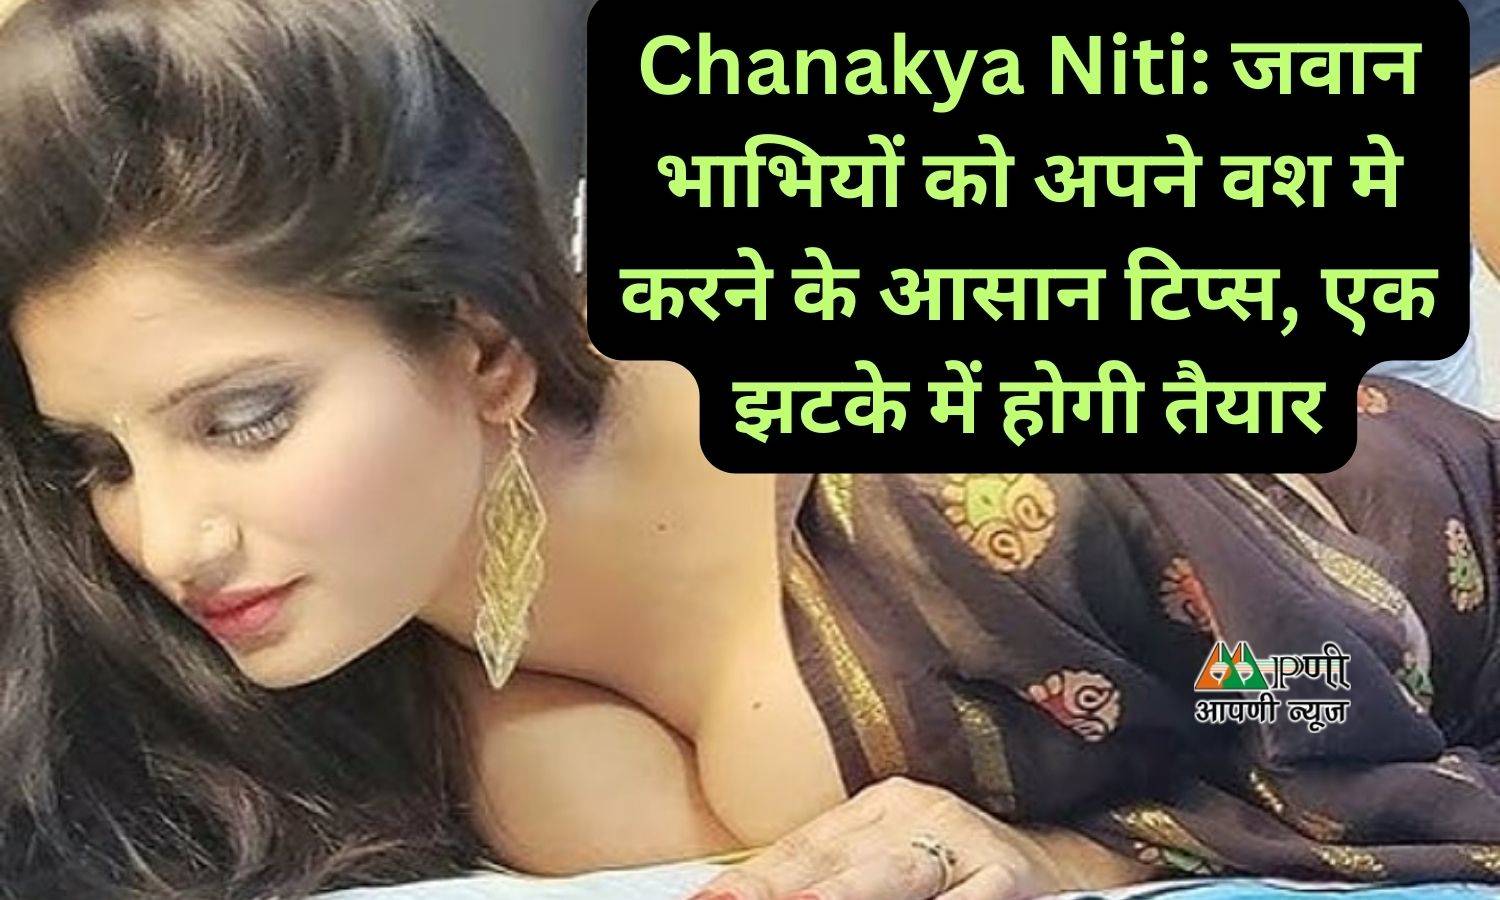 Chanakya Niti: जवान भाभियों को अपने वश मे करने के आसान टिप्स, एक झटके में होगी तैयार